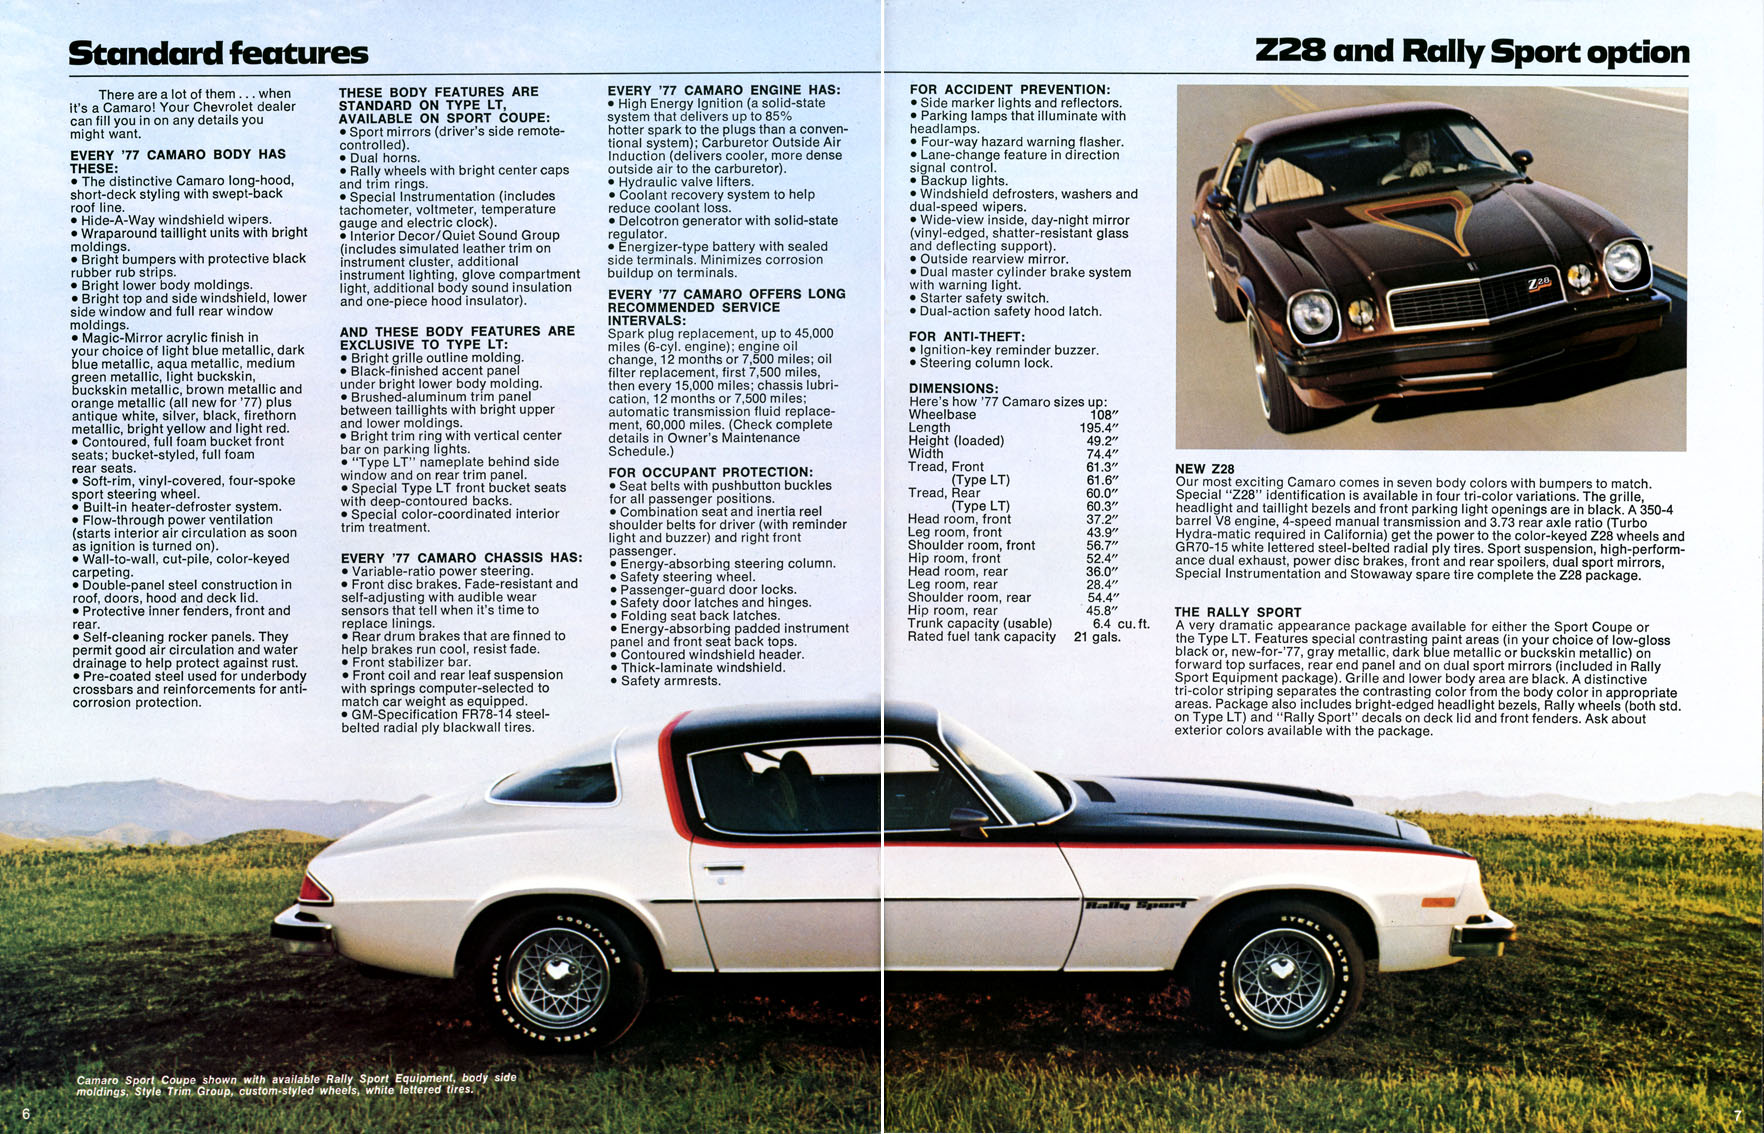 1977 Chev Camaro Brochure